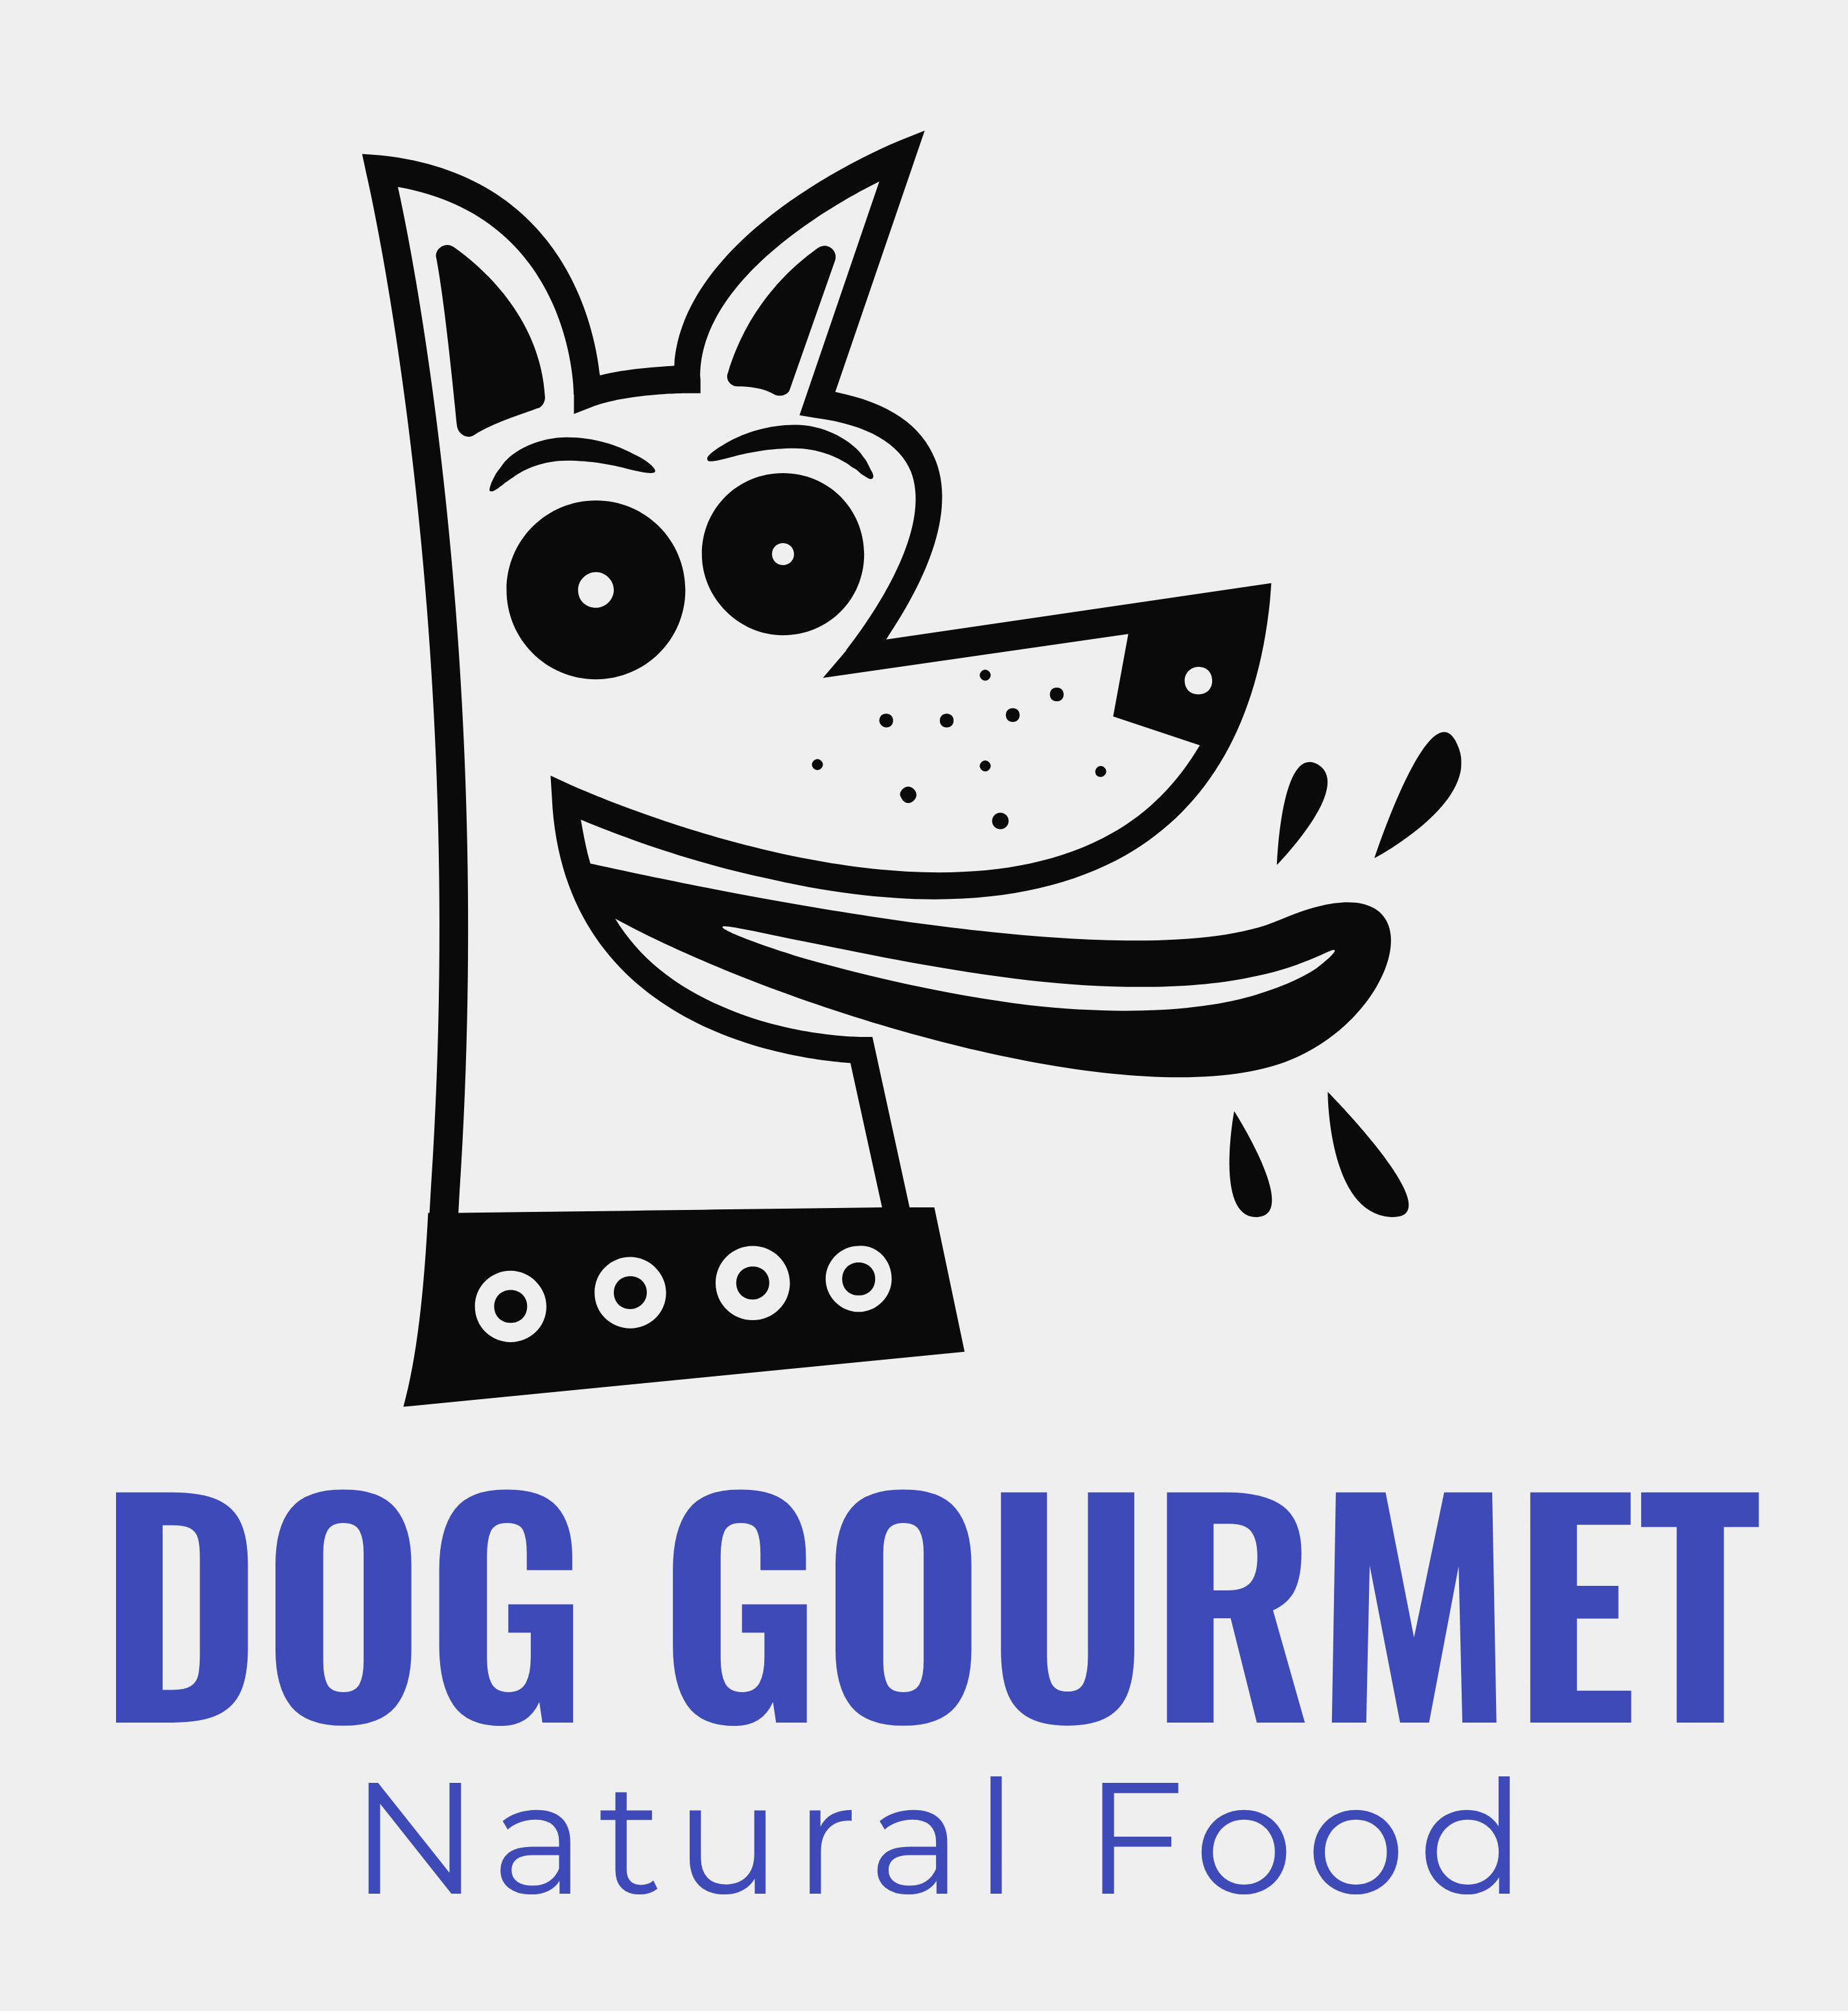 Dog Gourmet Natural Food